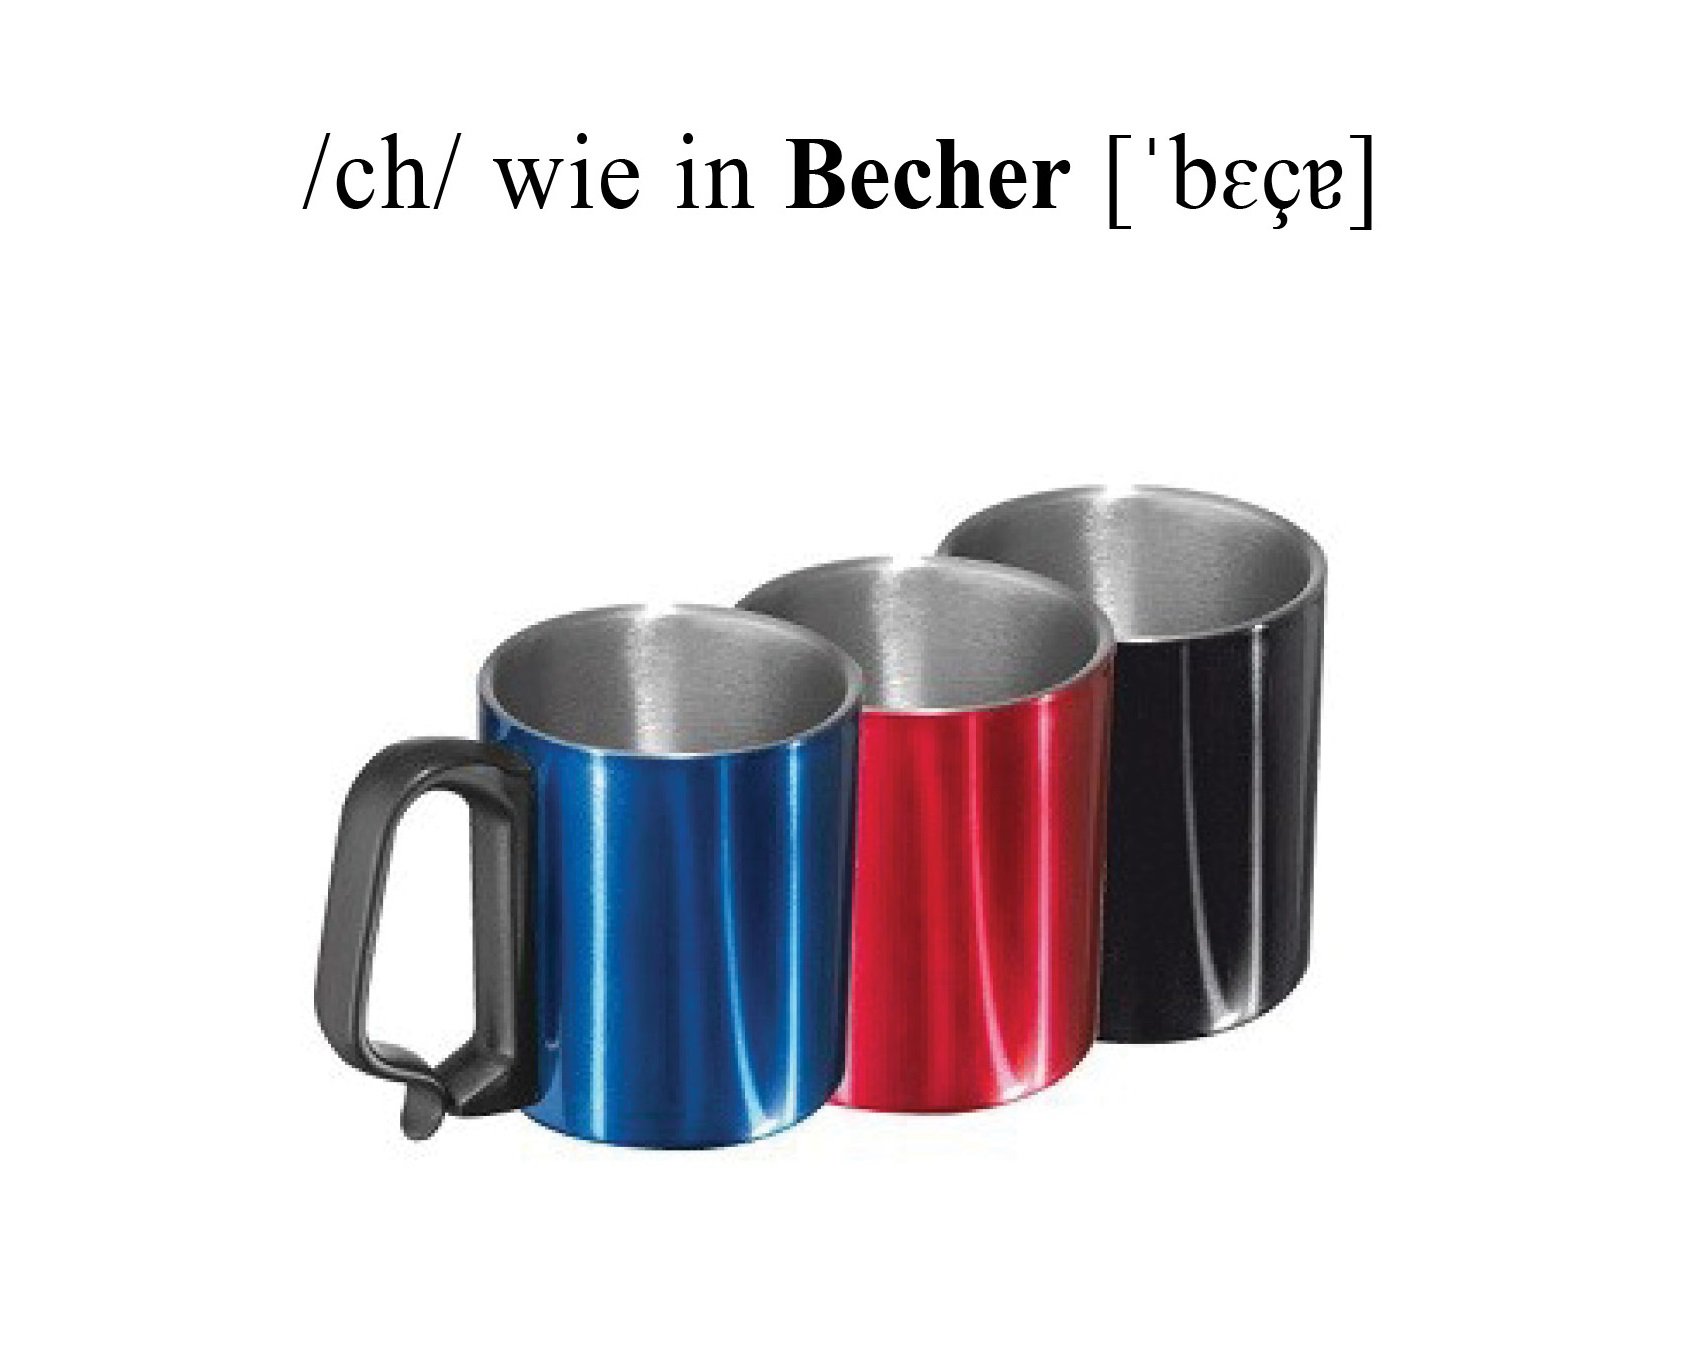 Becher